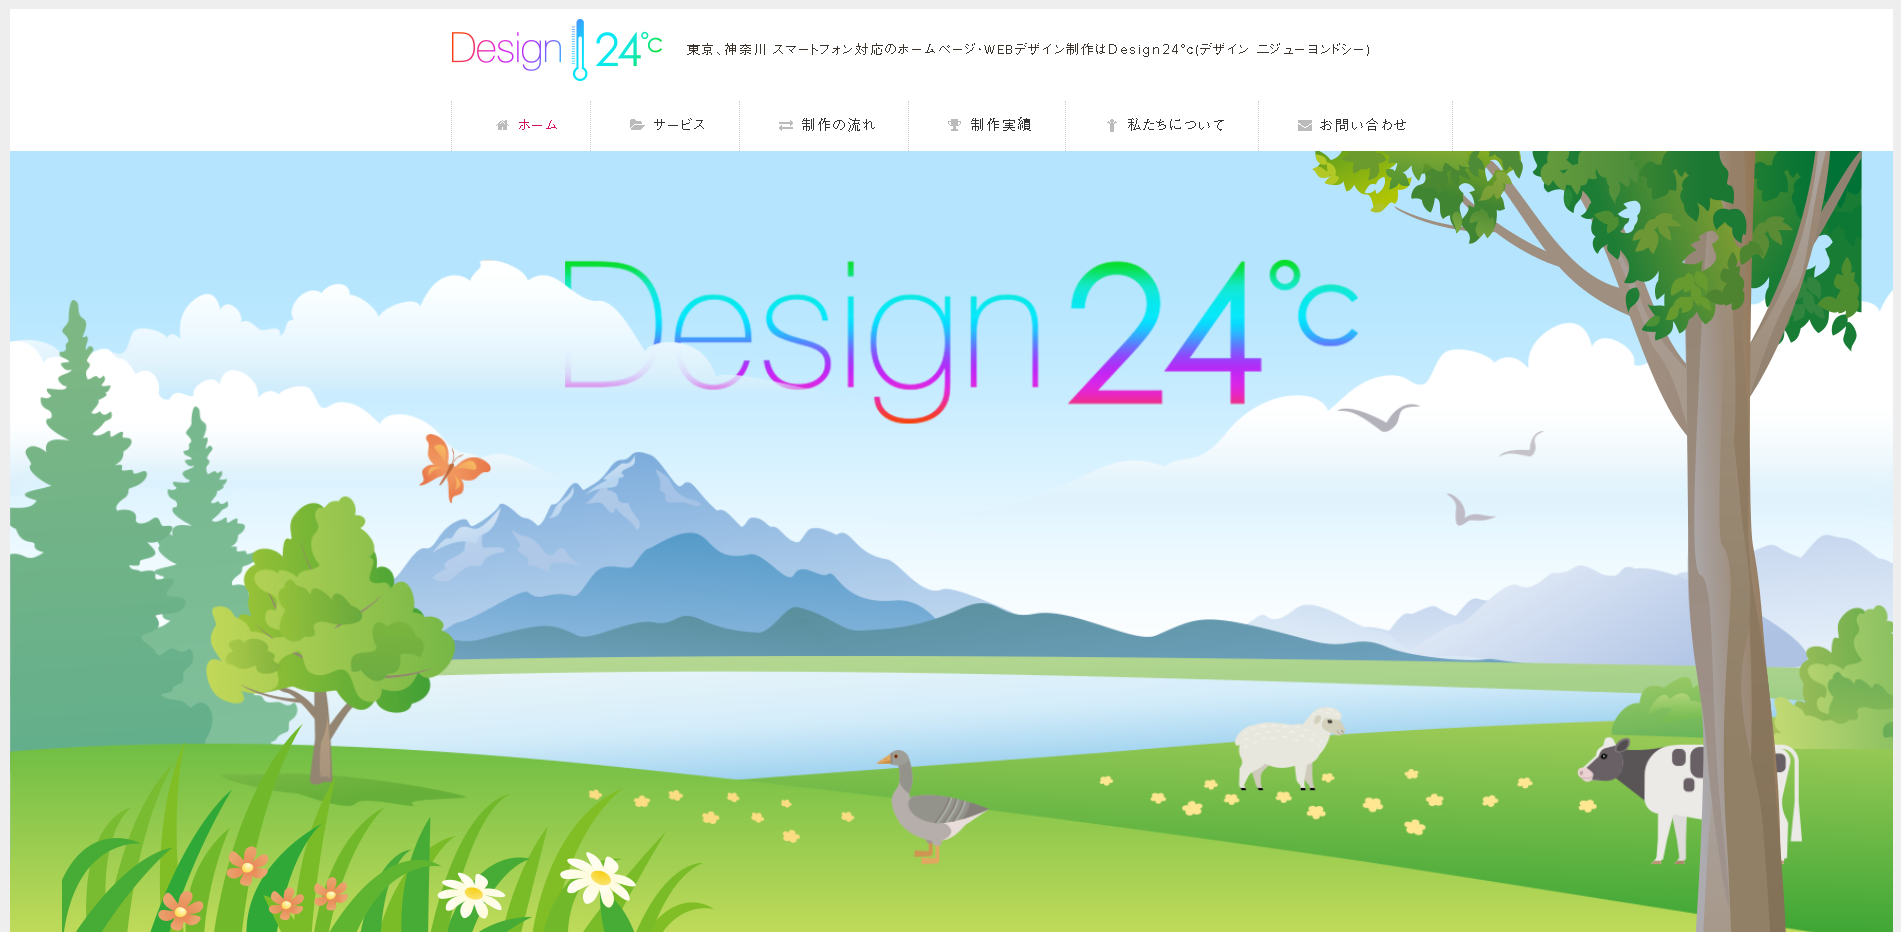 Design 24℃のDesign 24℃サービス